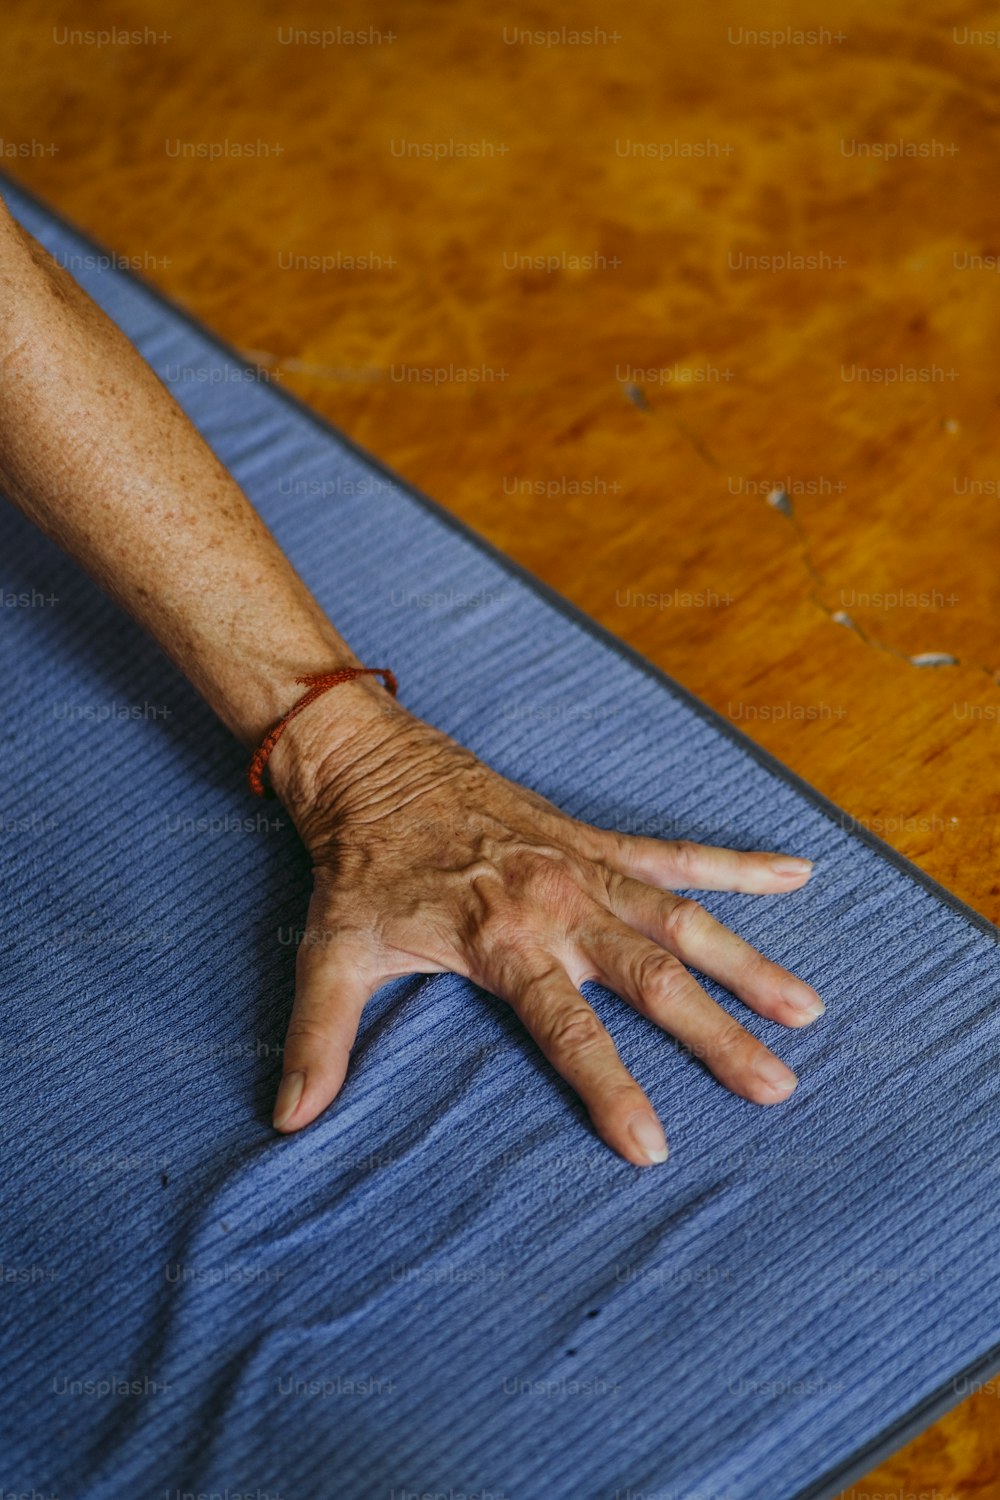 La mano de una persona descansando sobre una estera azul